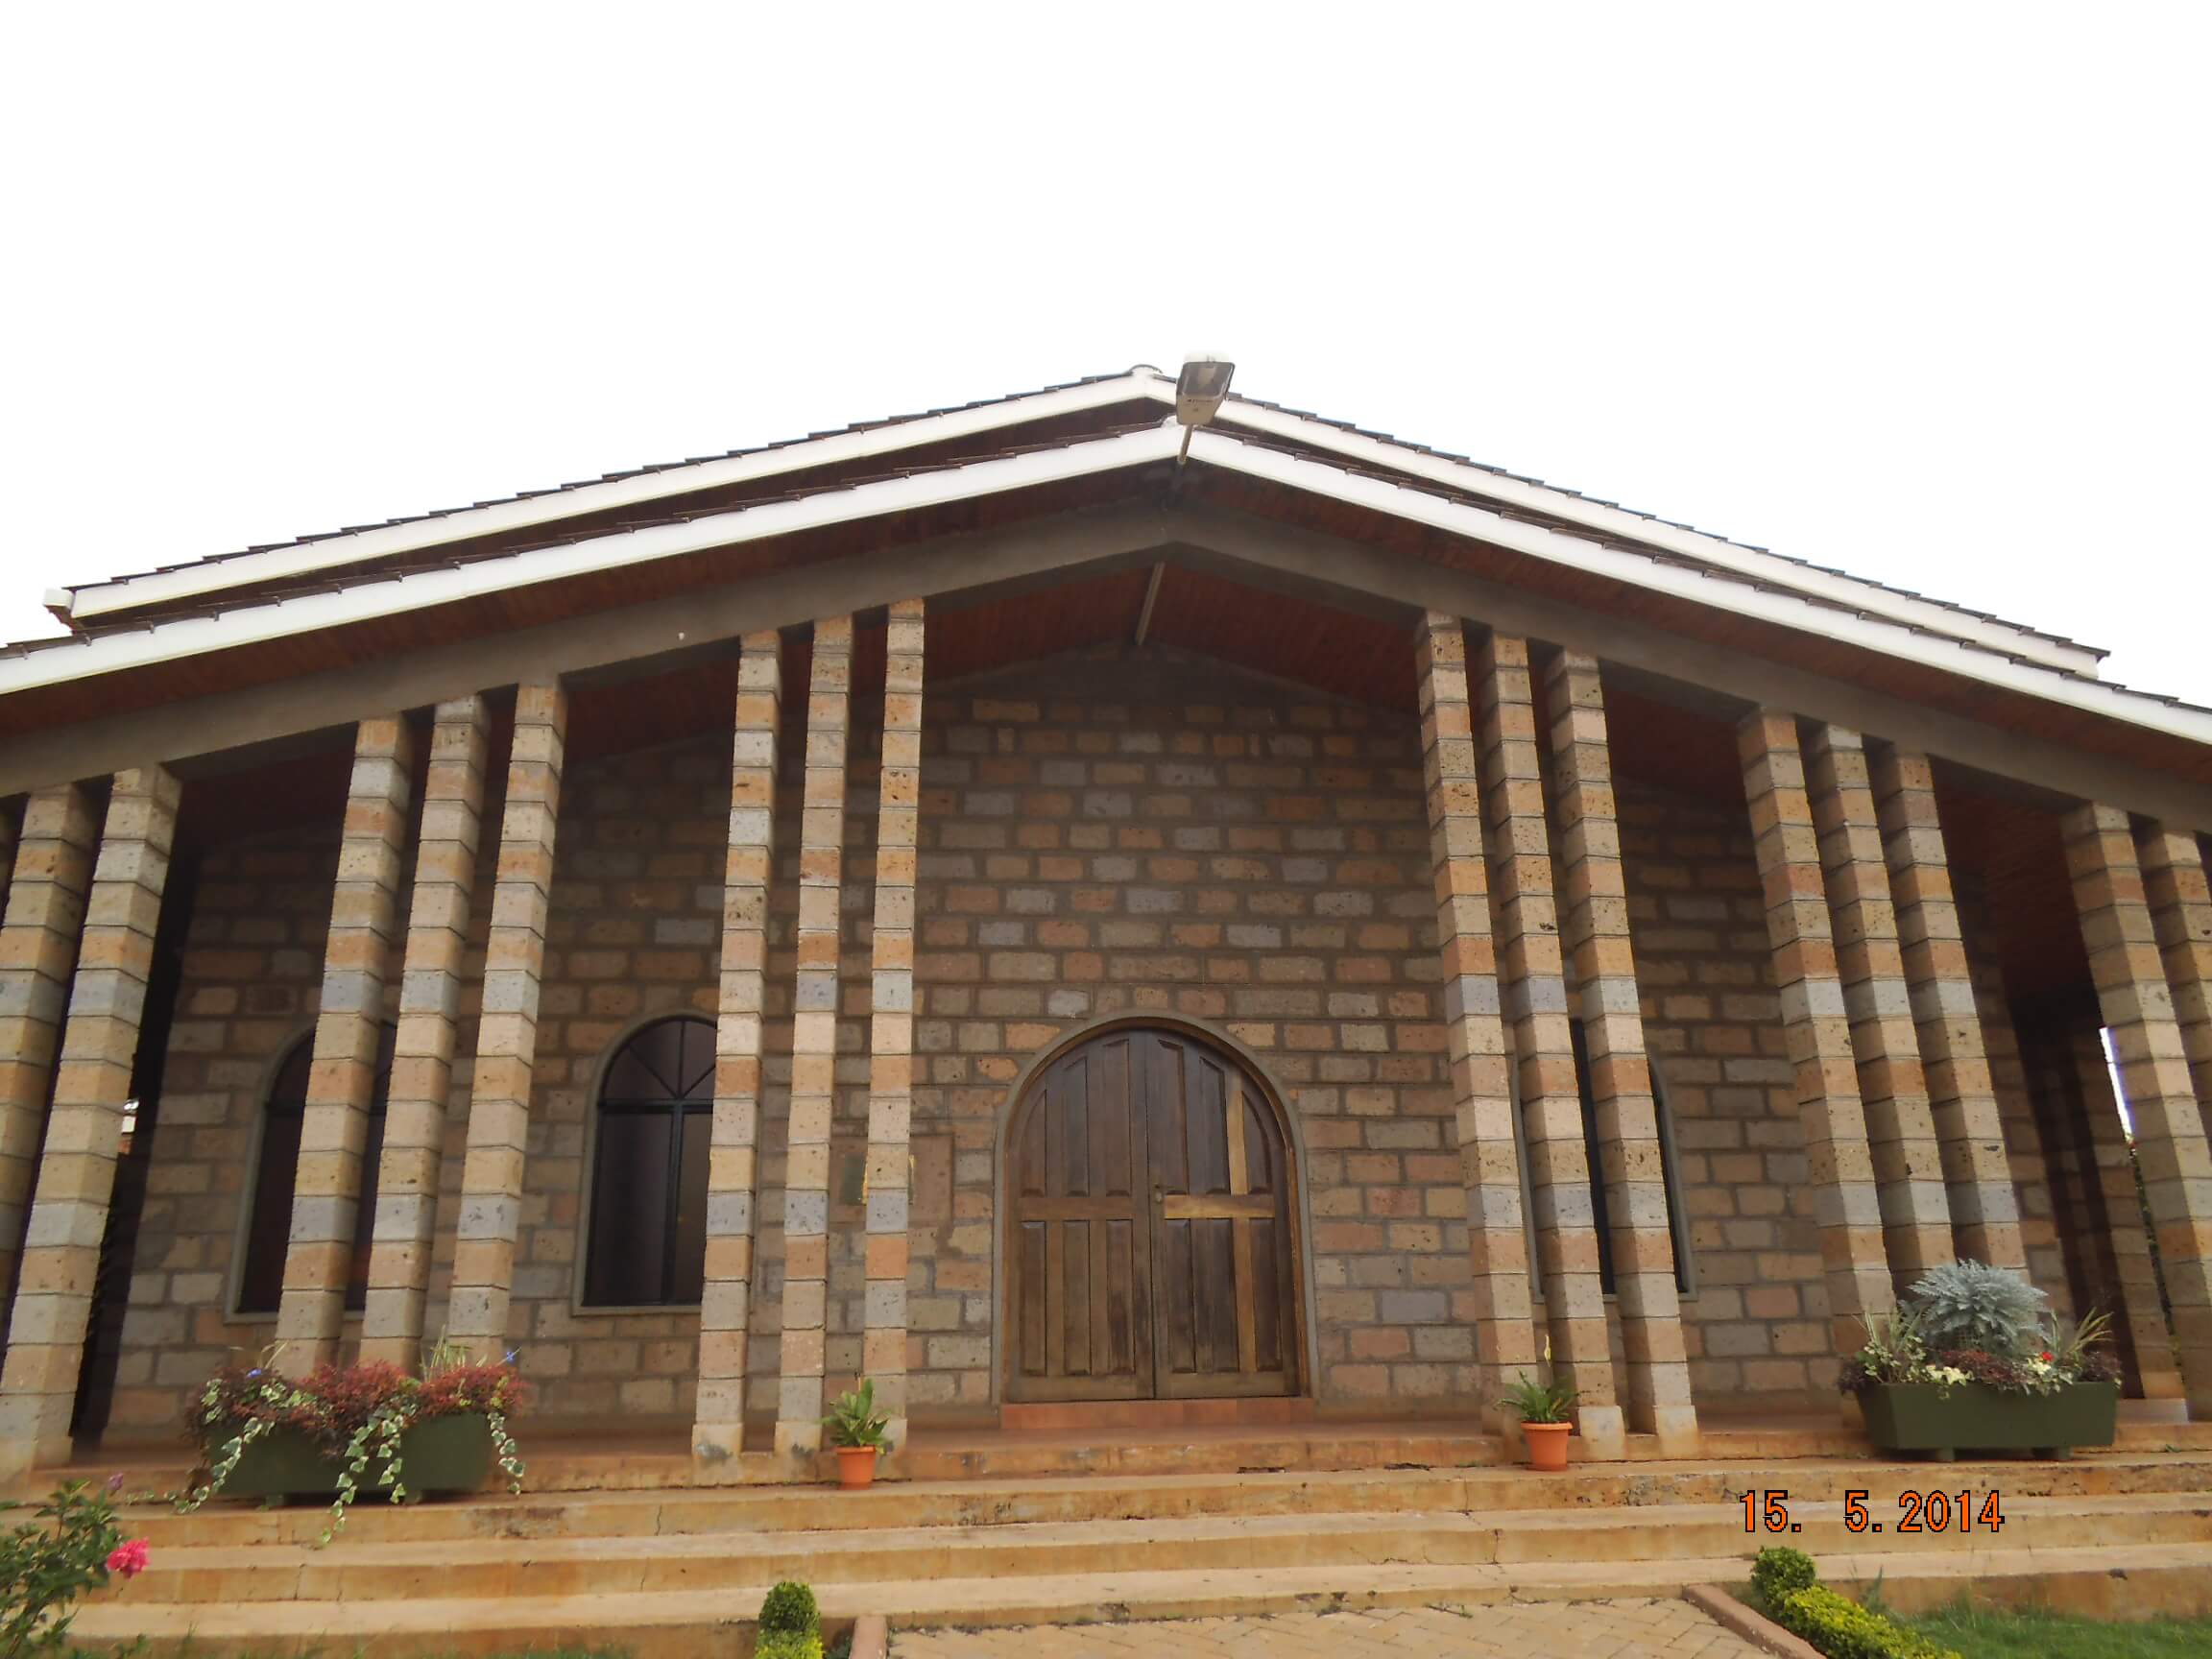 SSS4322 - 2013-Church Roof,Kariobangi, Nairobi, Kenya